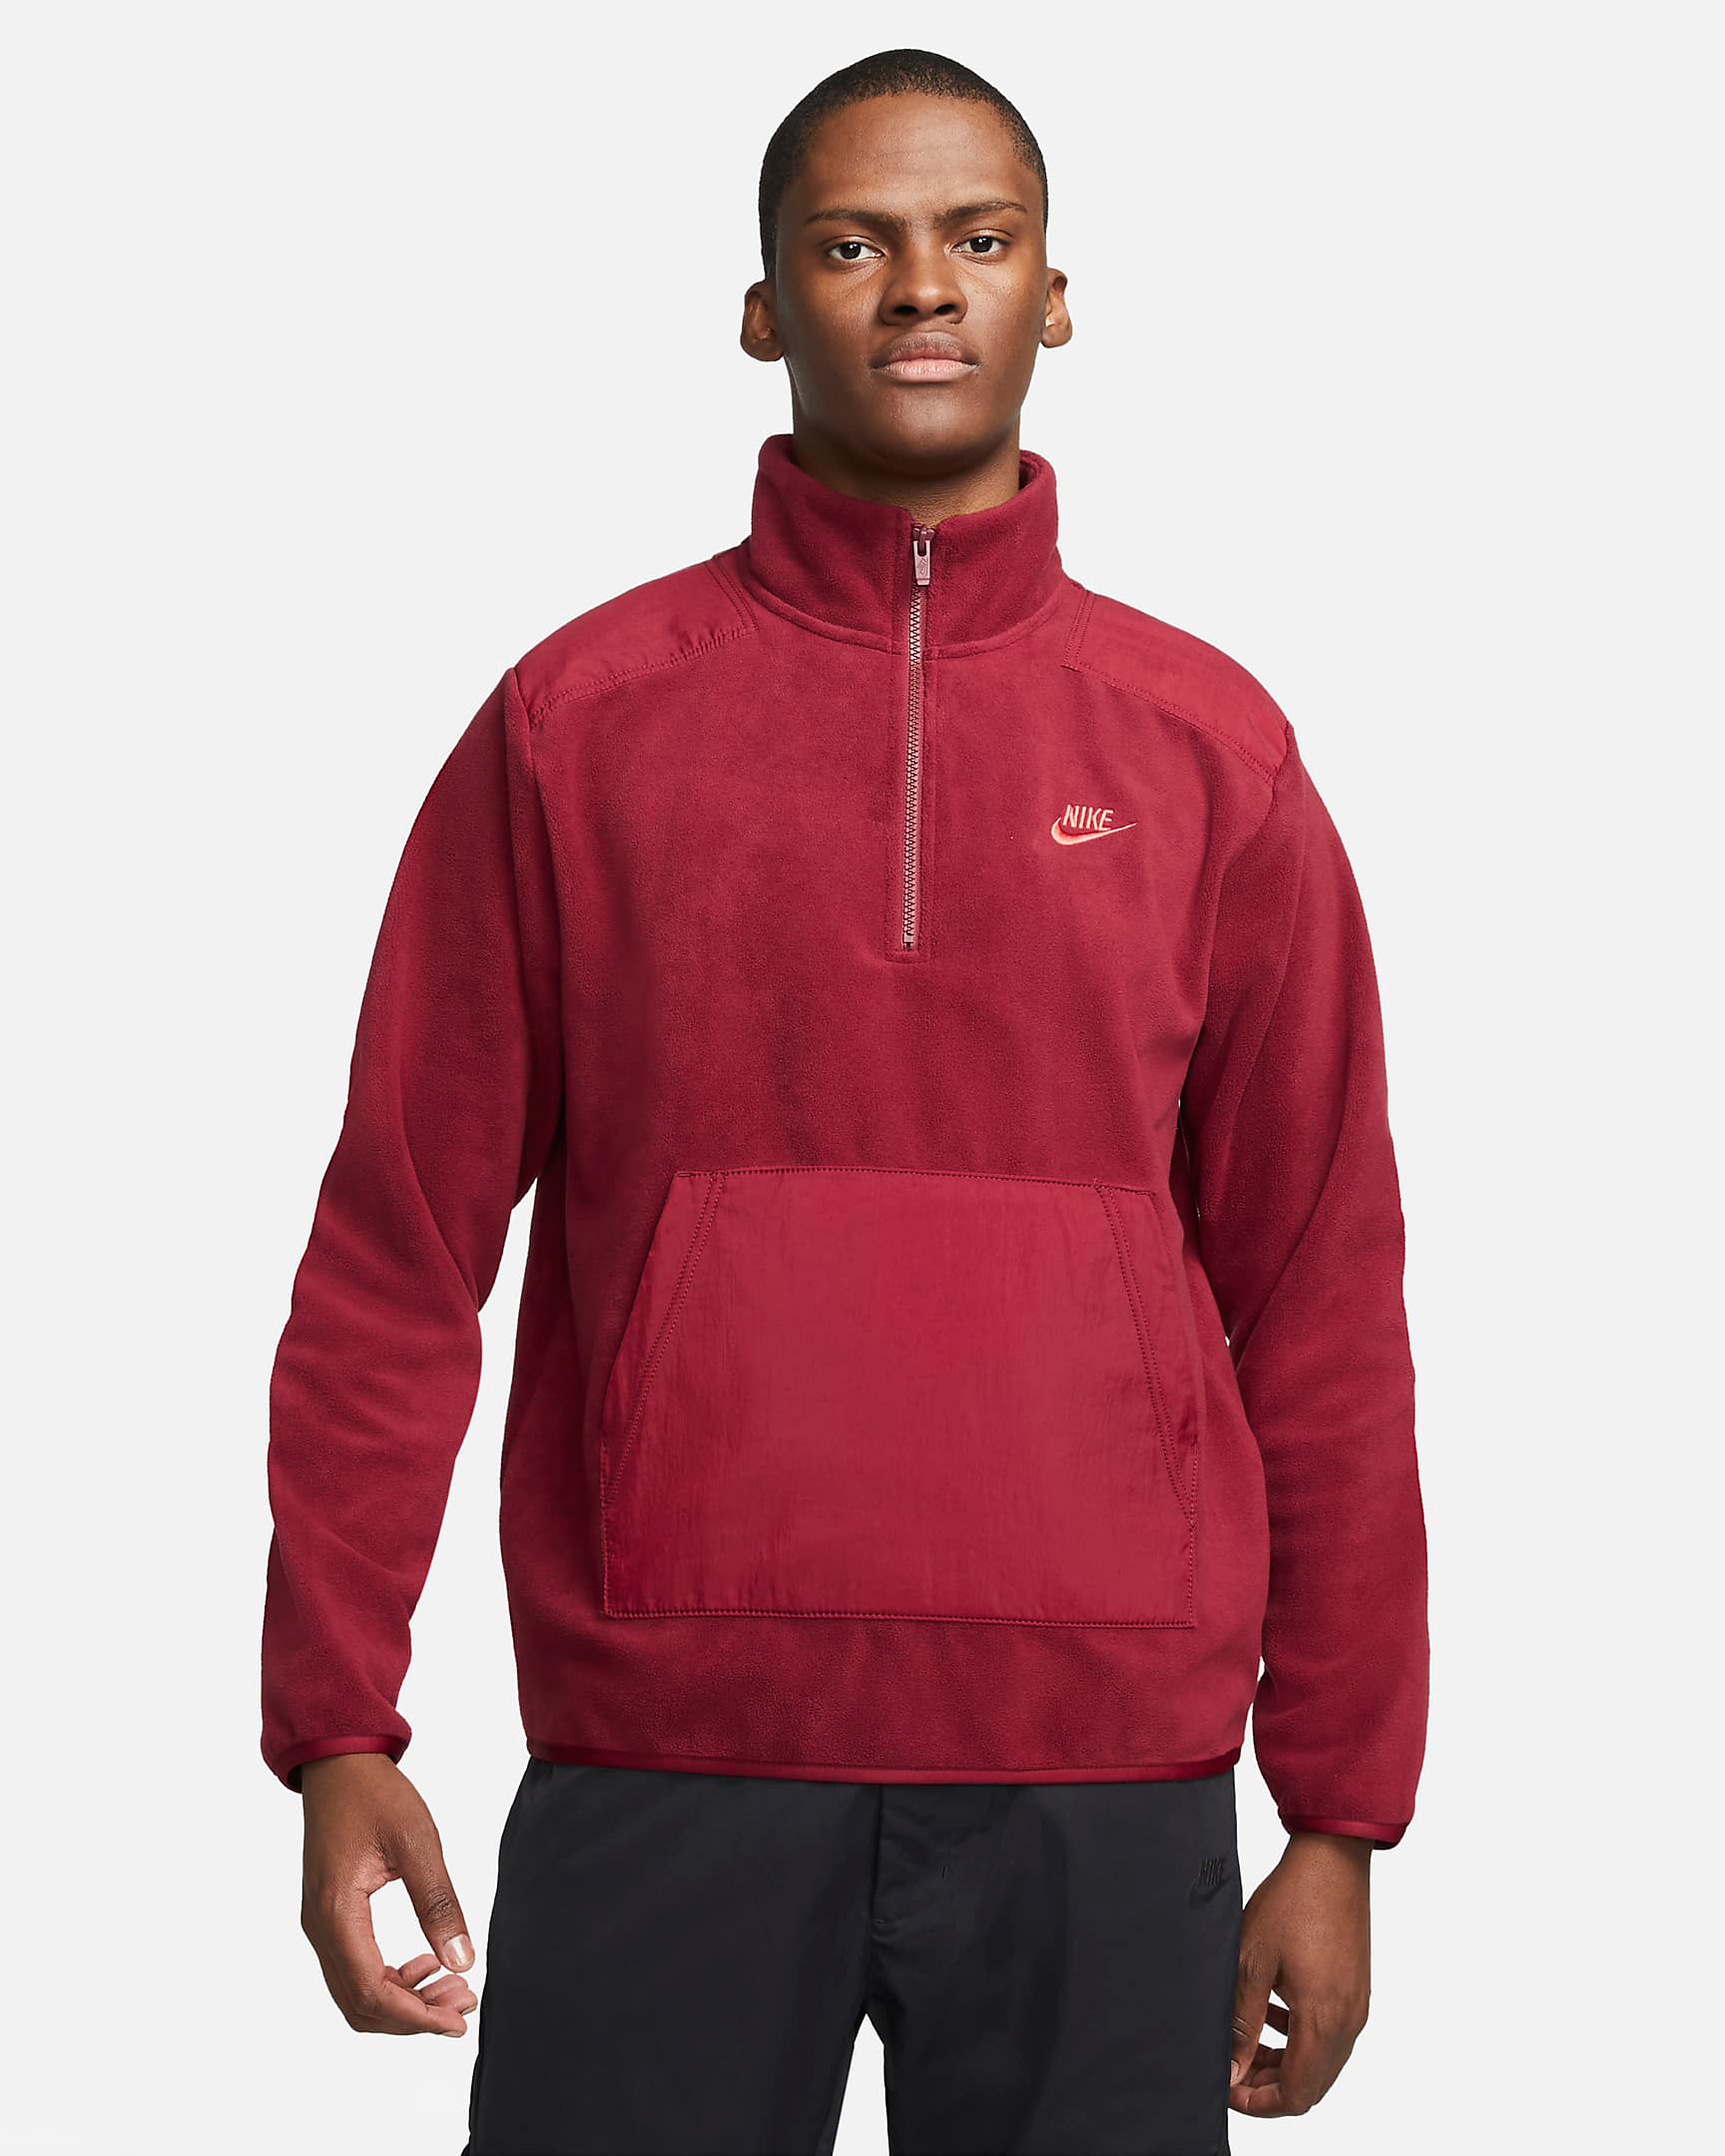 nike-team-red-sport-essentials-fleece-zip-top